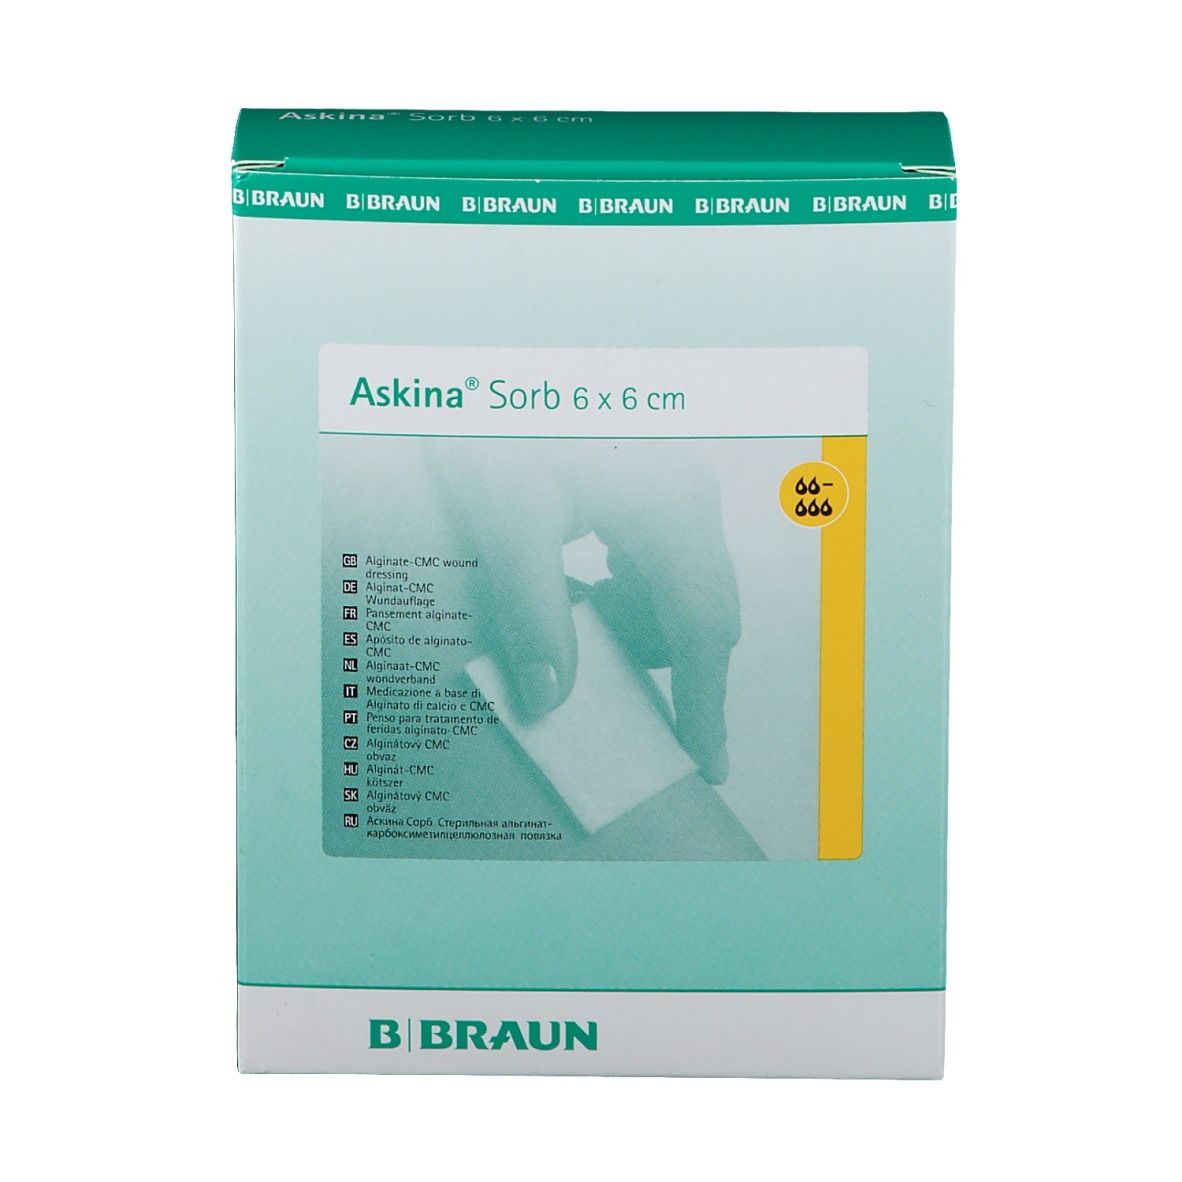 Askina® Sorb Wundauflage 6 x 6 cm steril